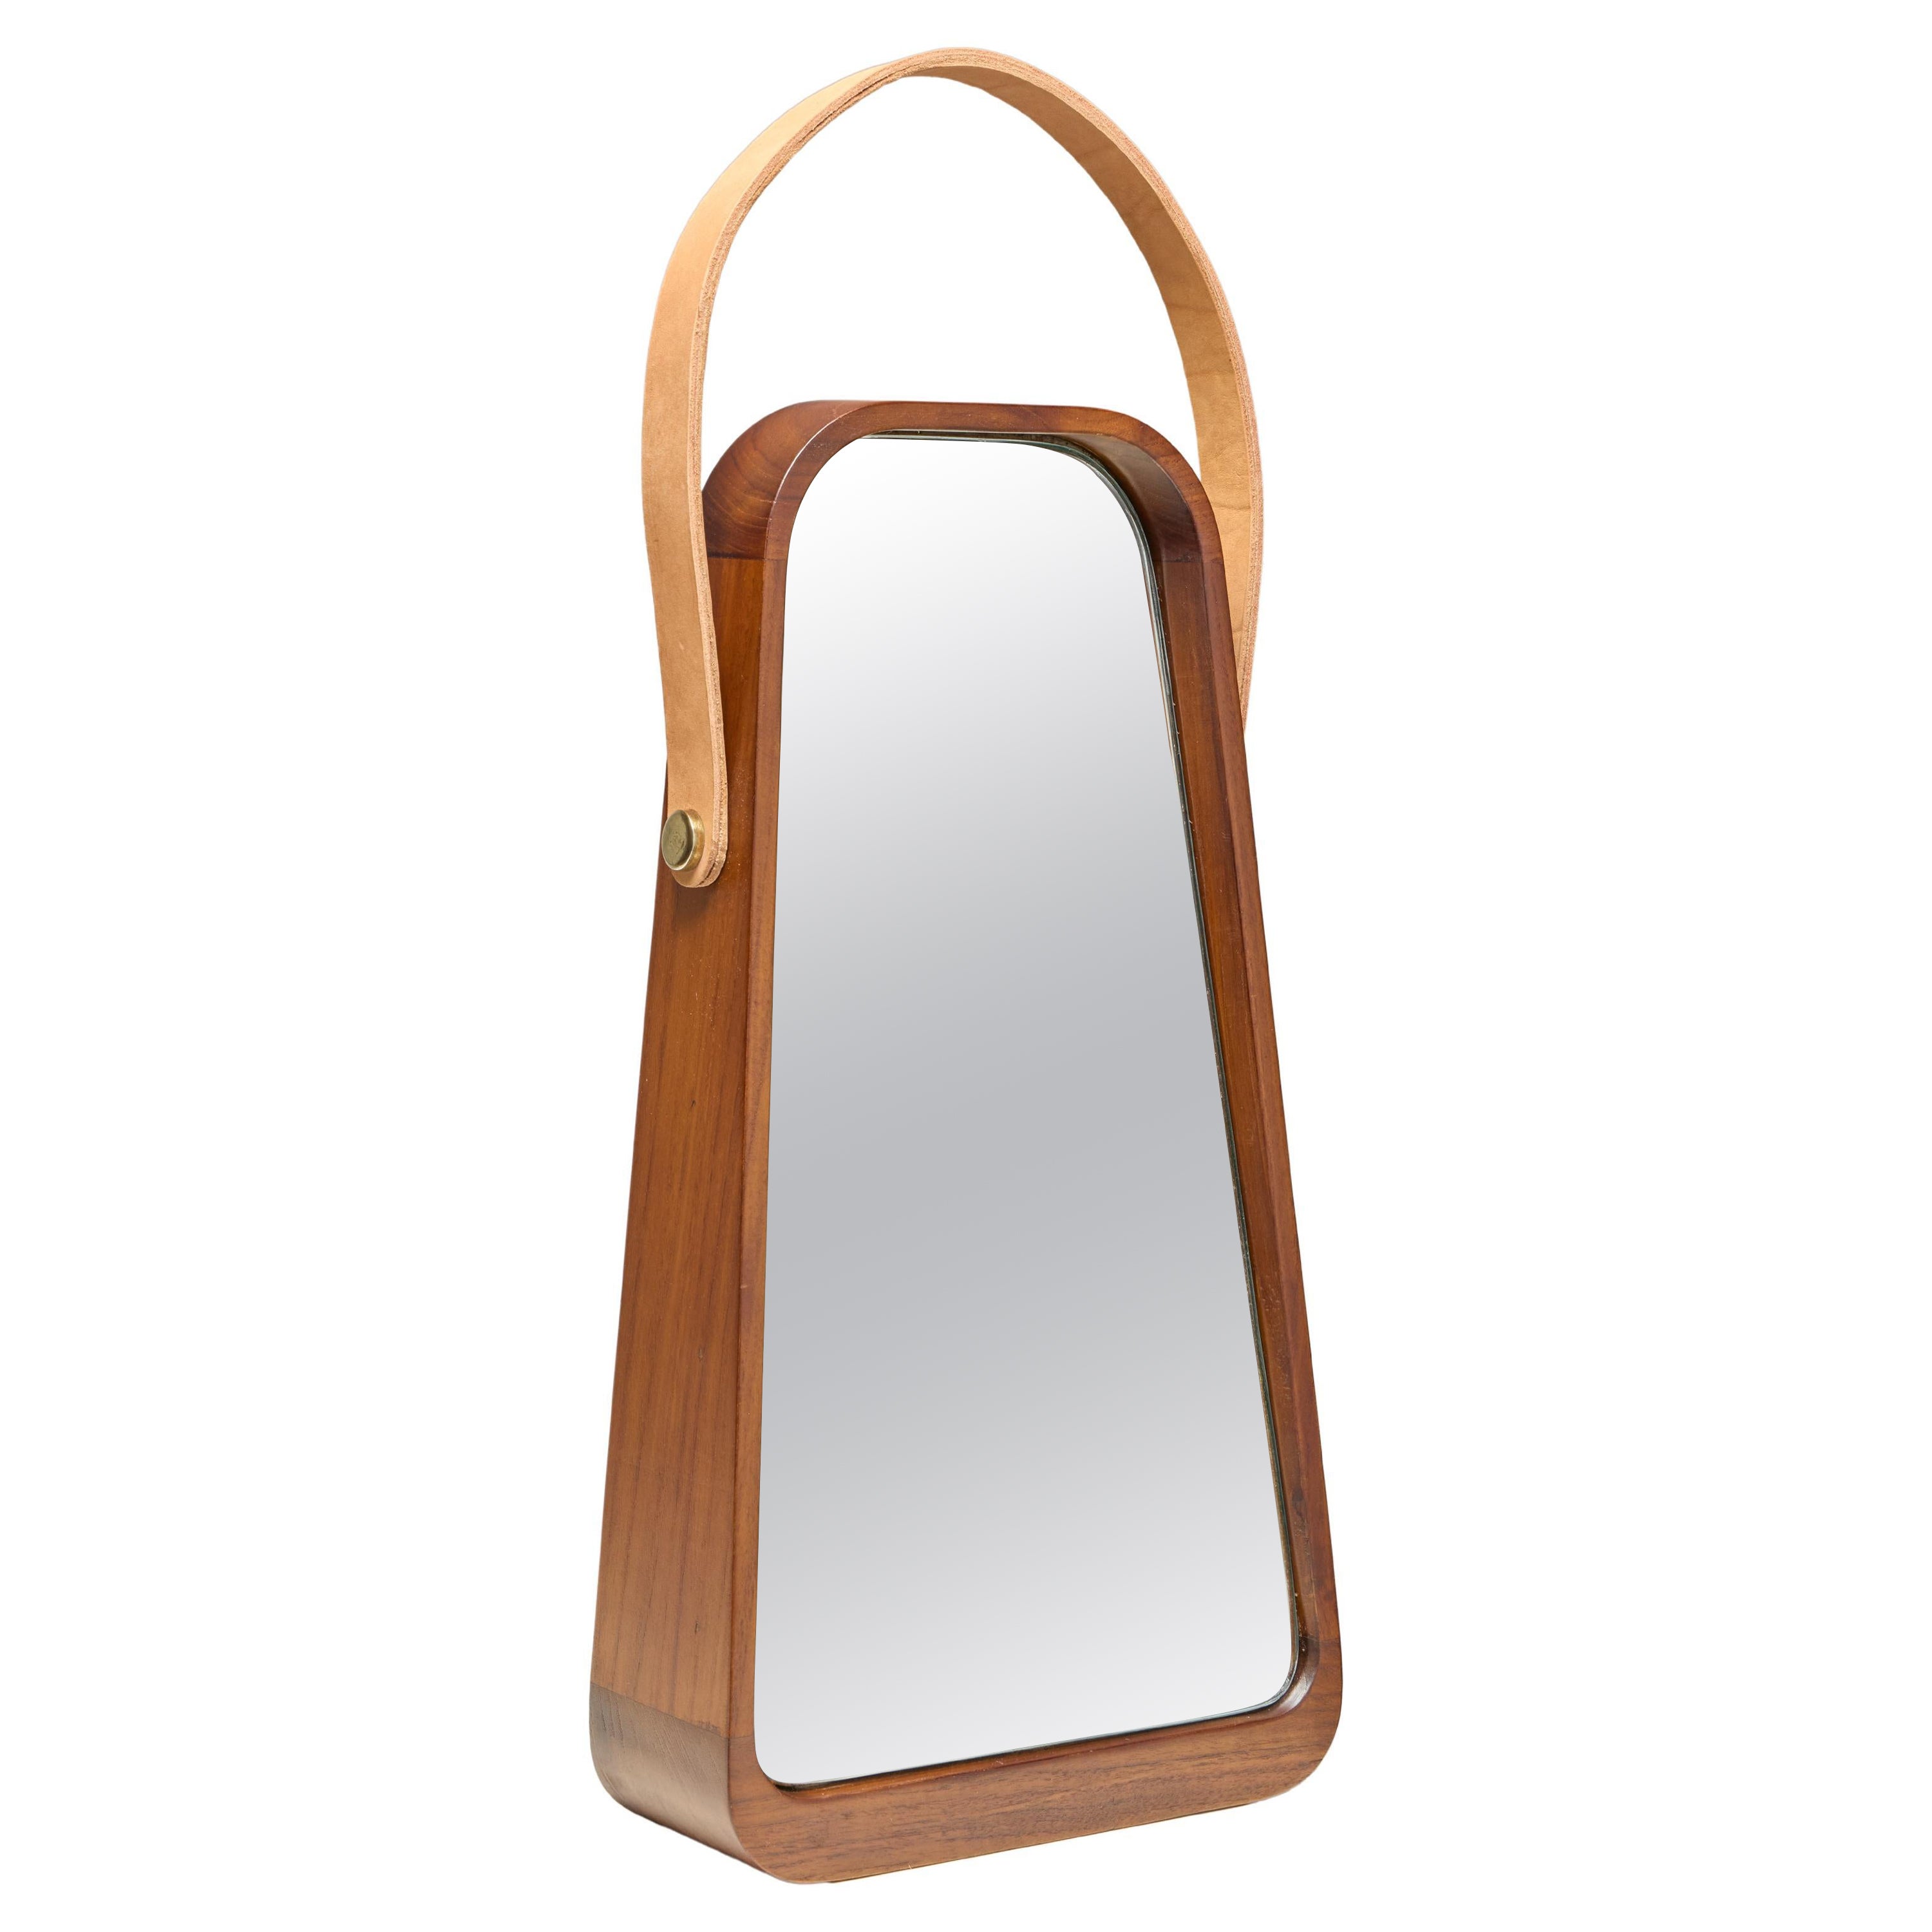 Mirror ZAZIE by Reda Amalou Design - Teakwood and Leather